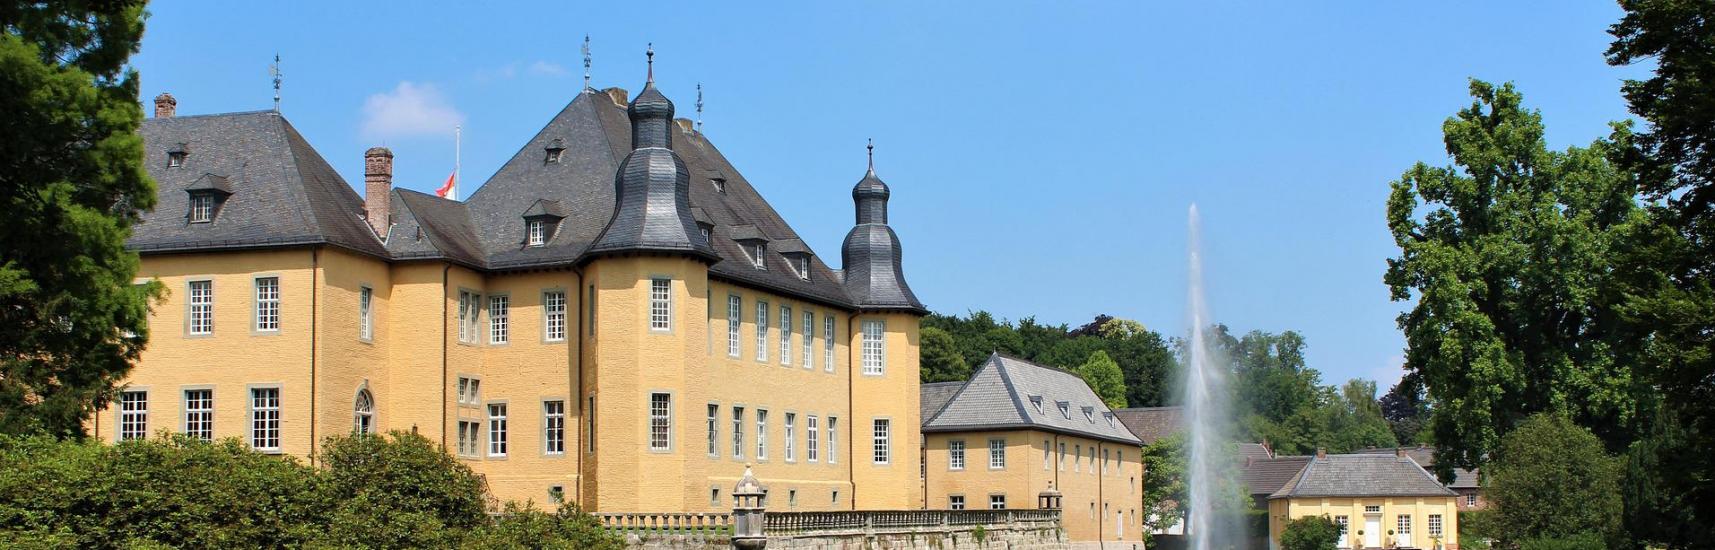 Schloss Dyck, Grevenbroich